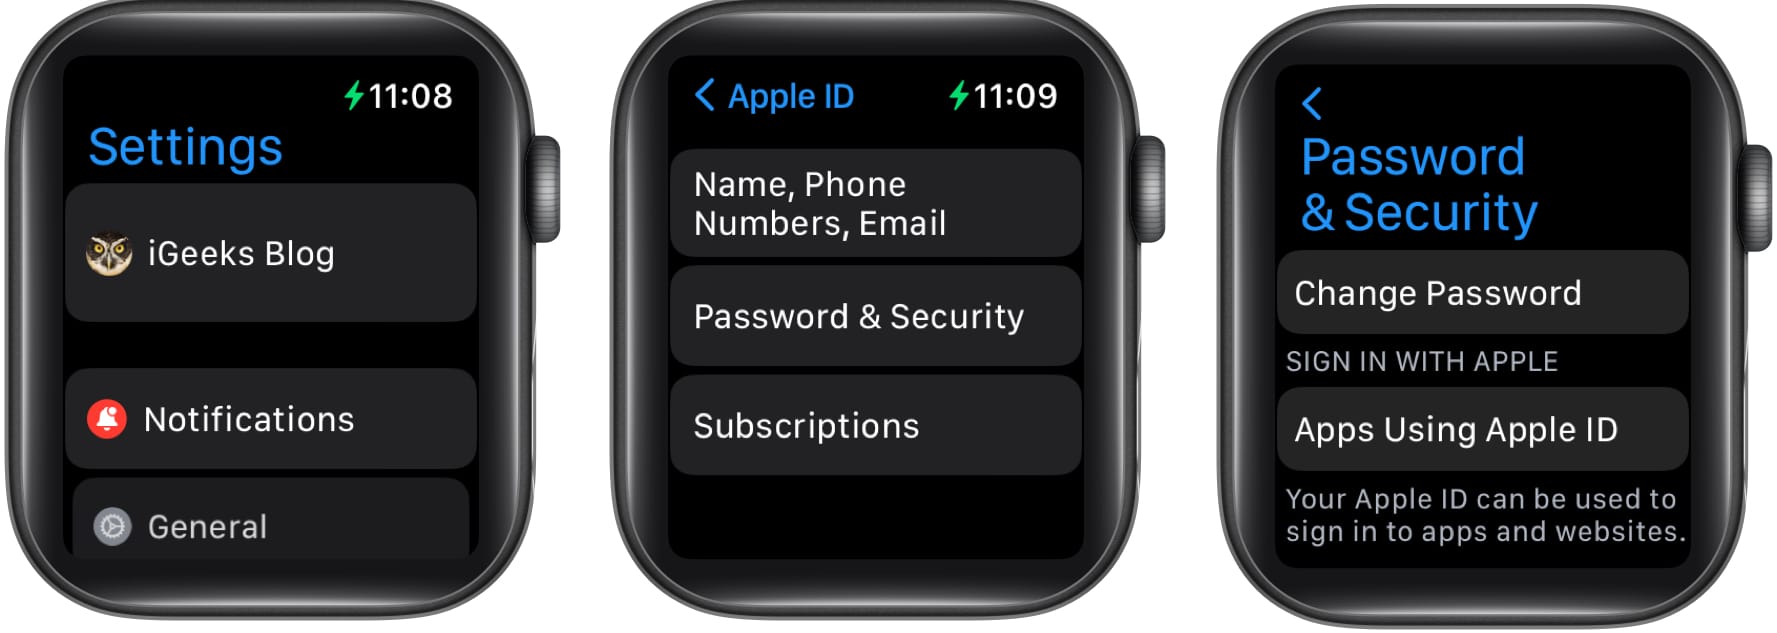 Välj Ändra lösenord på Apple Watch